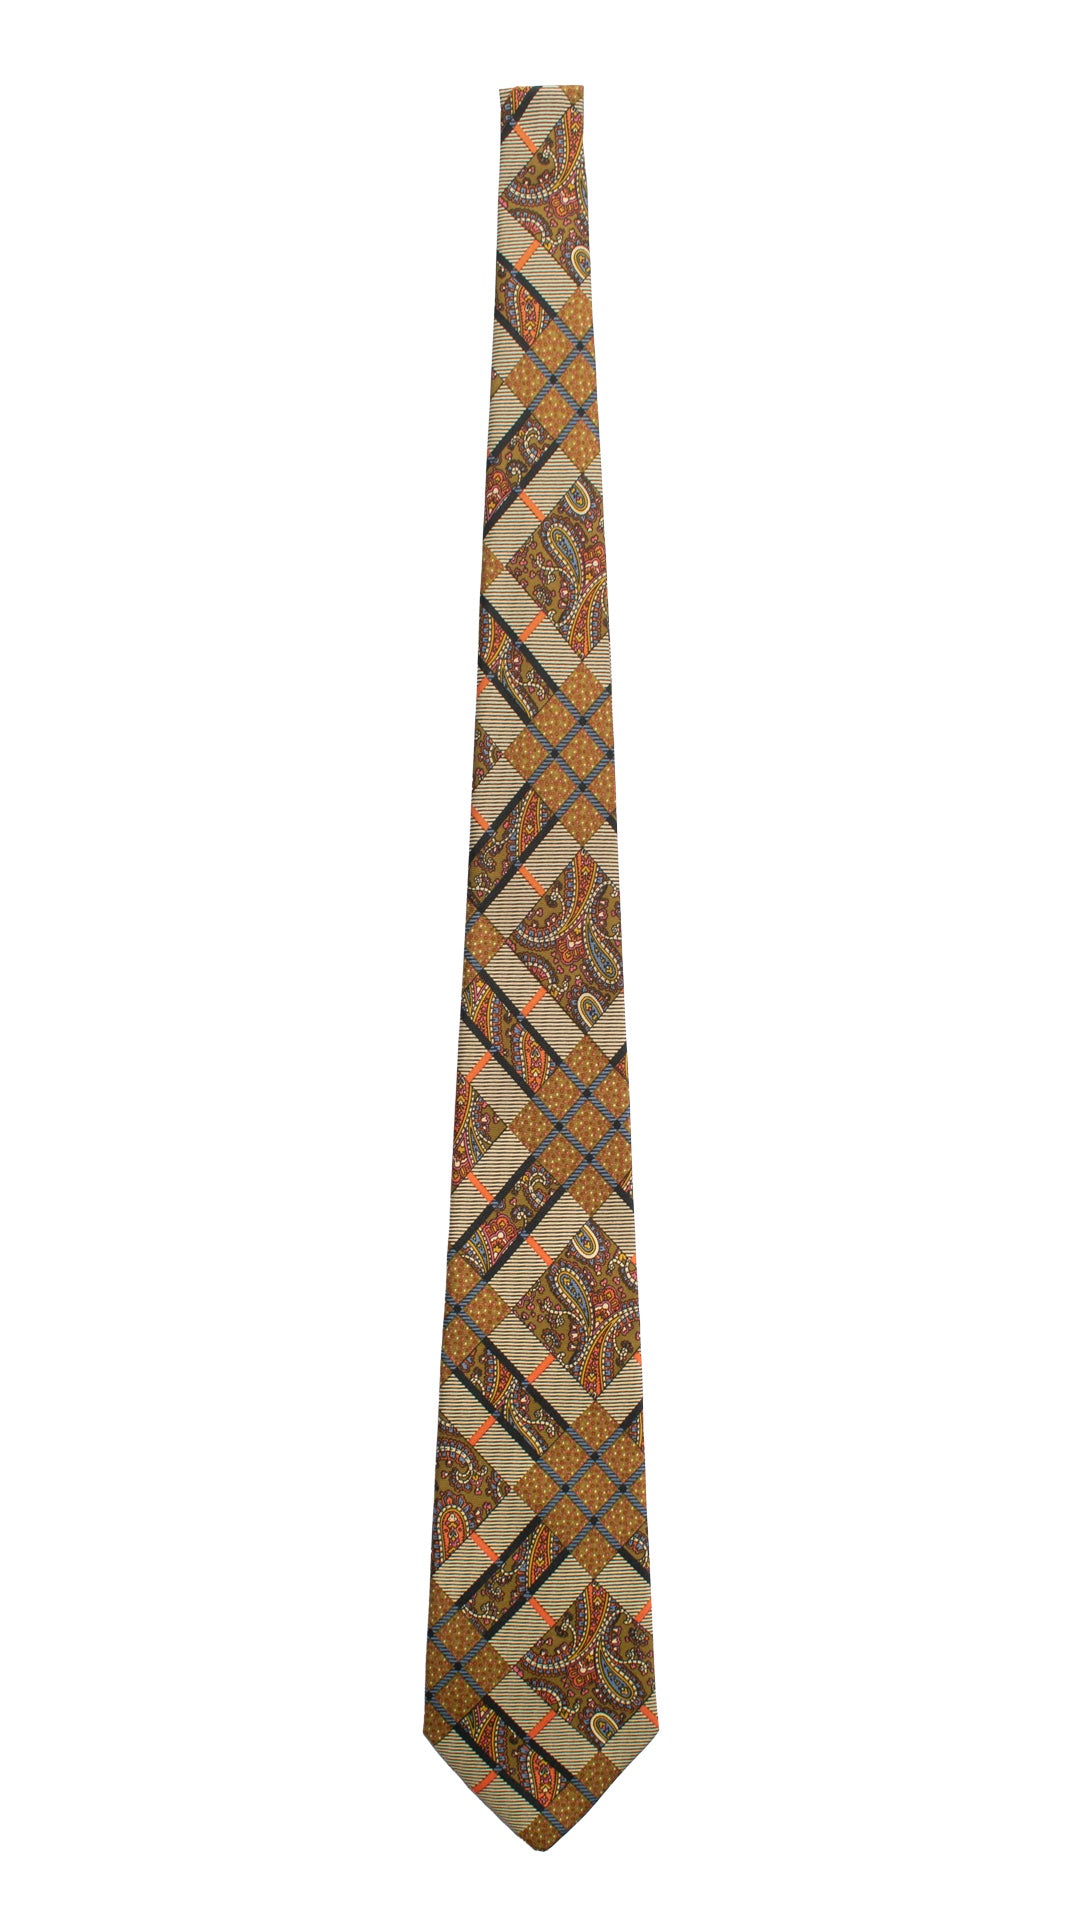 Cravatta Vintage in Twill di Seta Color Corda Fantasia Multicolor CV831 Intera